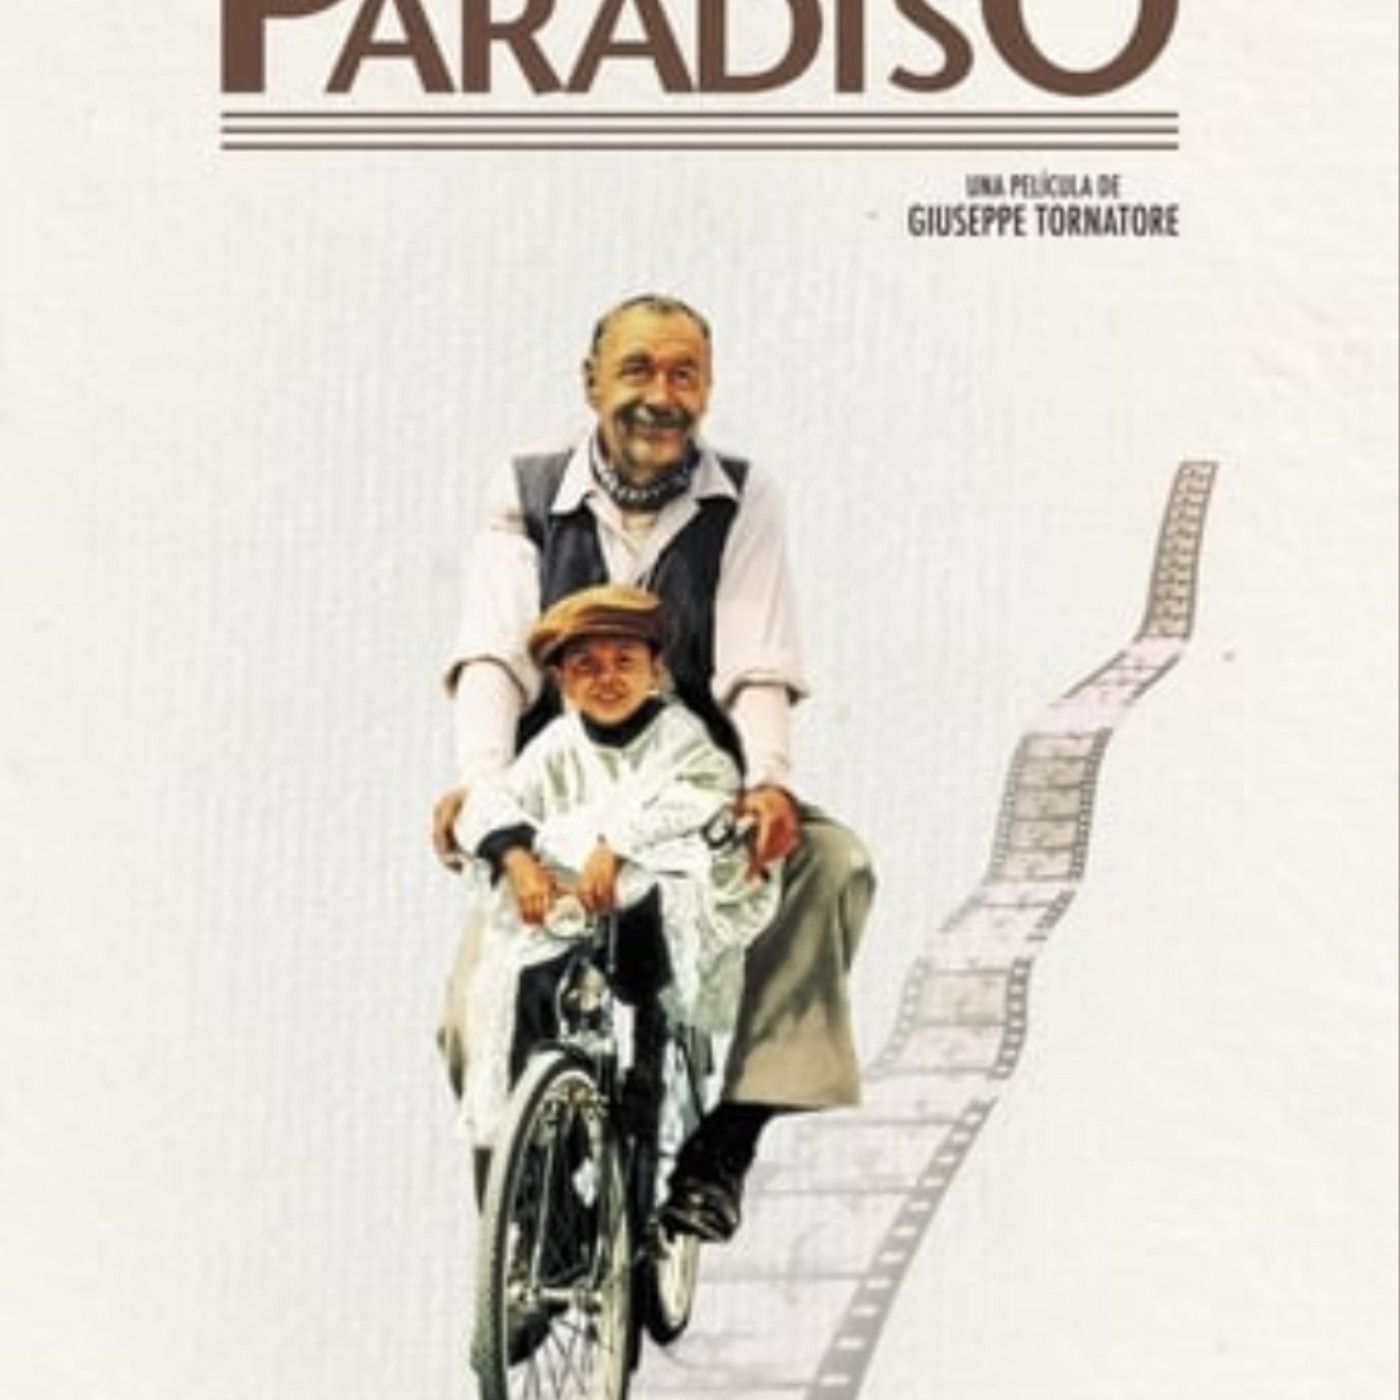 Ver Cinema Paradiso 1988 online gratis en español y latino | Podcast on  SoundOn